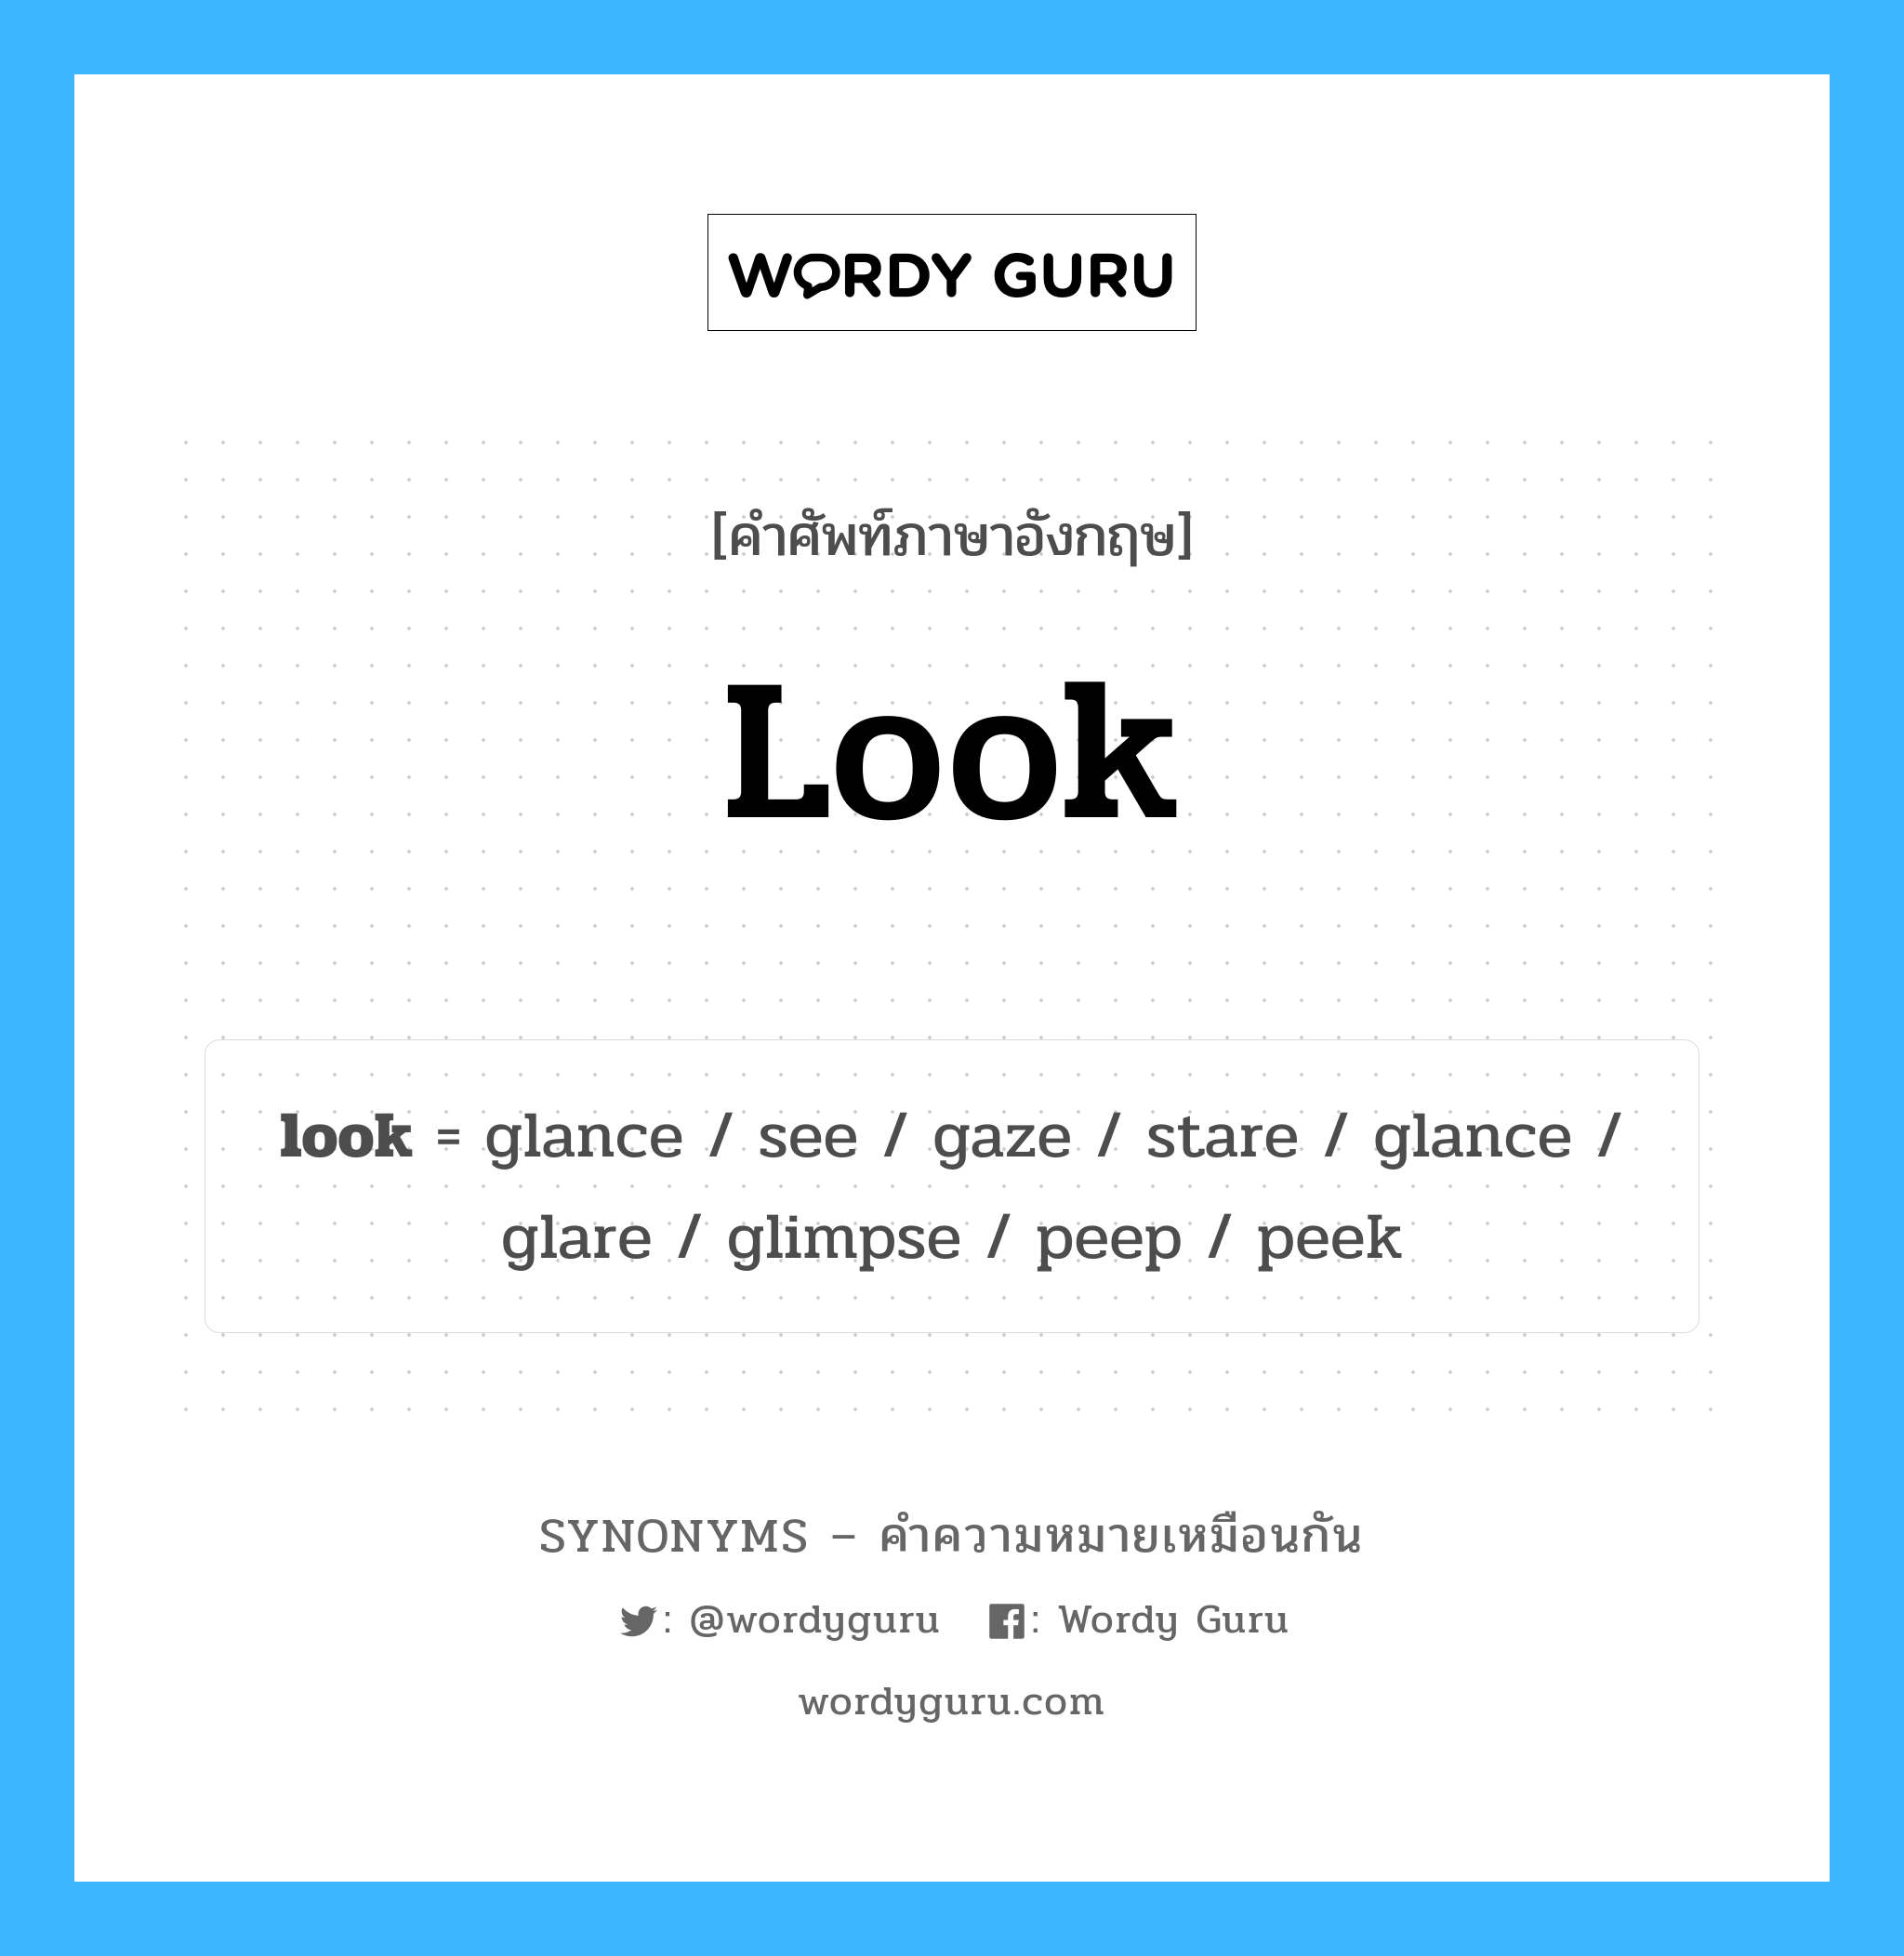 look เป็นหนึ่งใน glimpse และมีคำอื่น ๆ อีกดังนี้, คำศัพท์ภาษาอังกฤษ look ความหมายคล้ายกันกับ glimpse แปลว่า เหลือบ หมวด glimpse